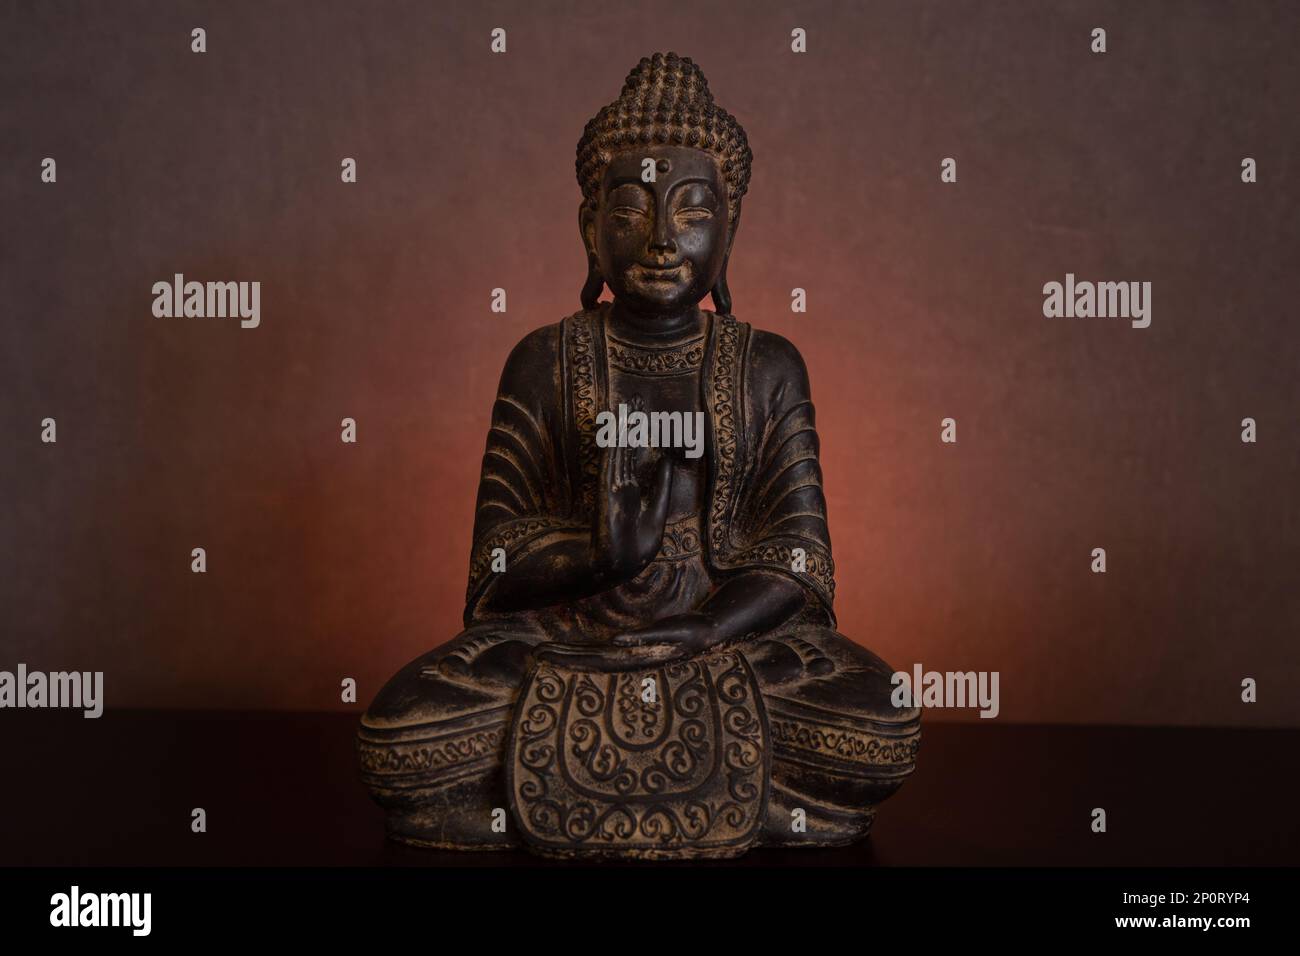 Die Buddha-Statue, die in einer dunklen Umgebung auf einem goldenen, leuchtenden Hintergrund bei Kerzenlicht meditiert Stockfoto